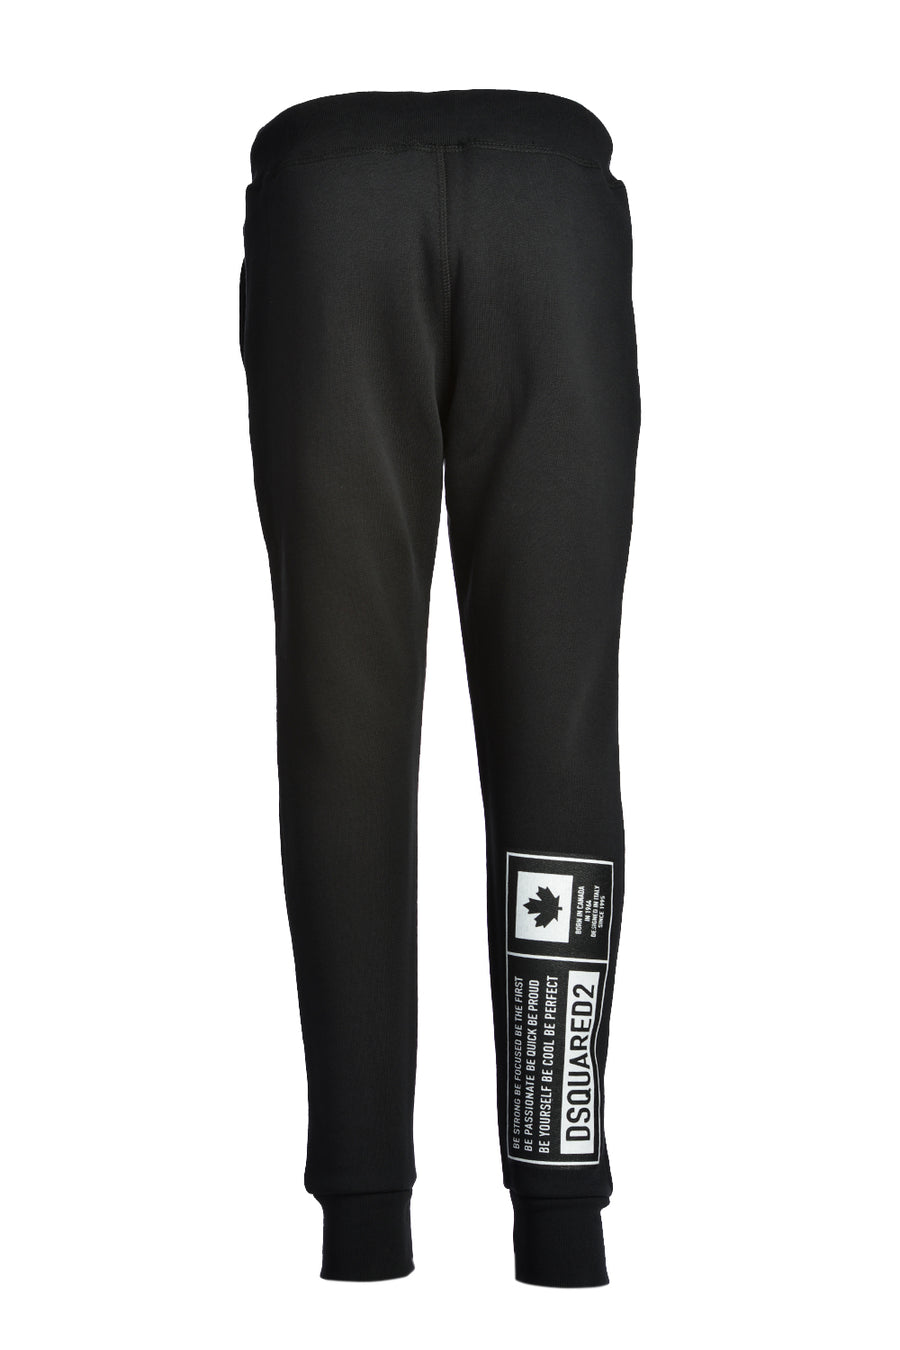 Pantalone jogging nero con logo